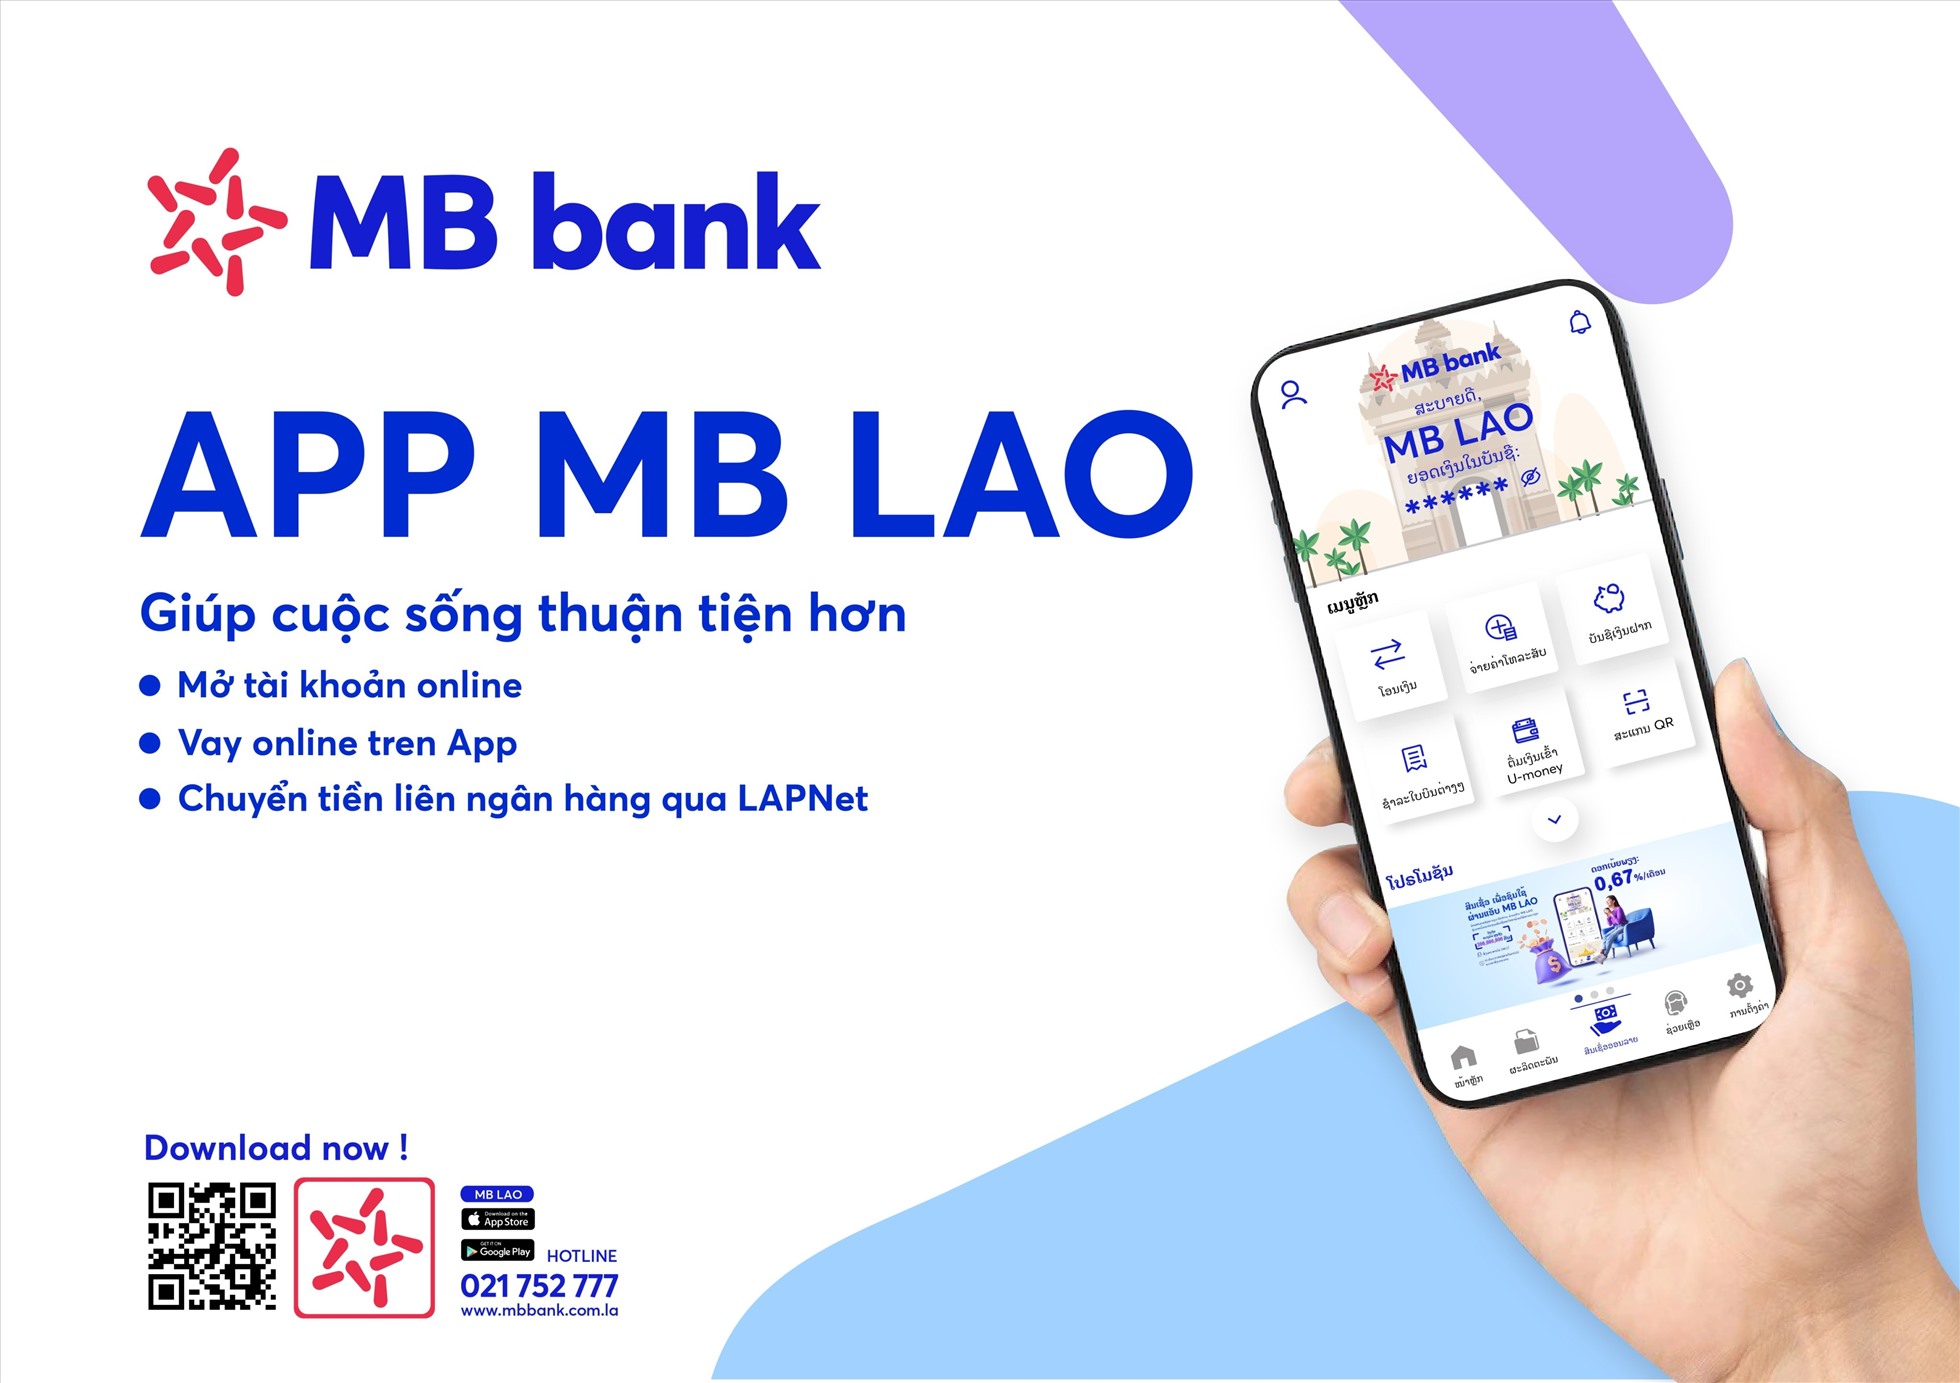 App MB Lào giúp khách hàng thuận tiện và tối ưu hóa trải nghiệm giao dịch ngân hàng trên kênh số. Nguồn: MB